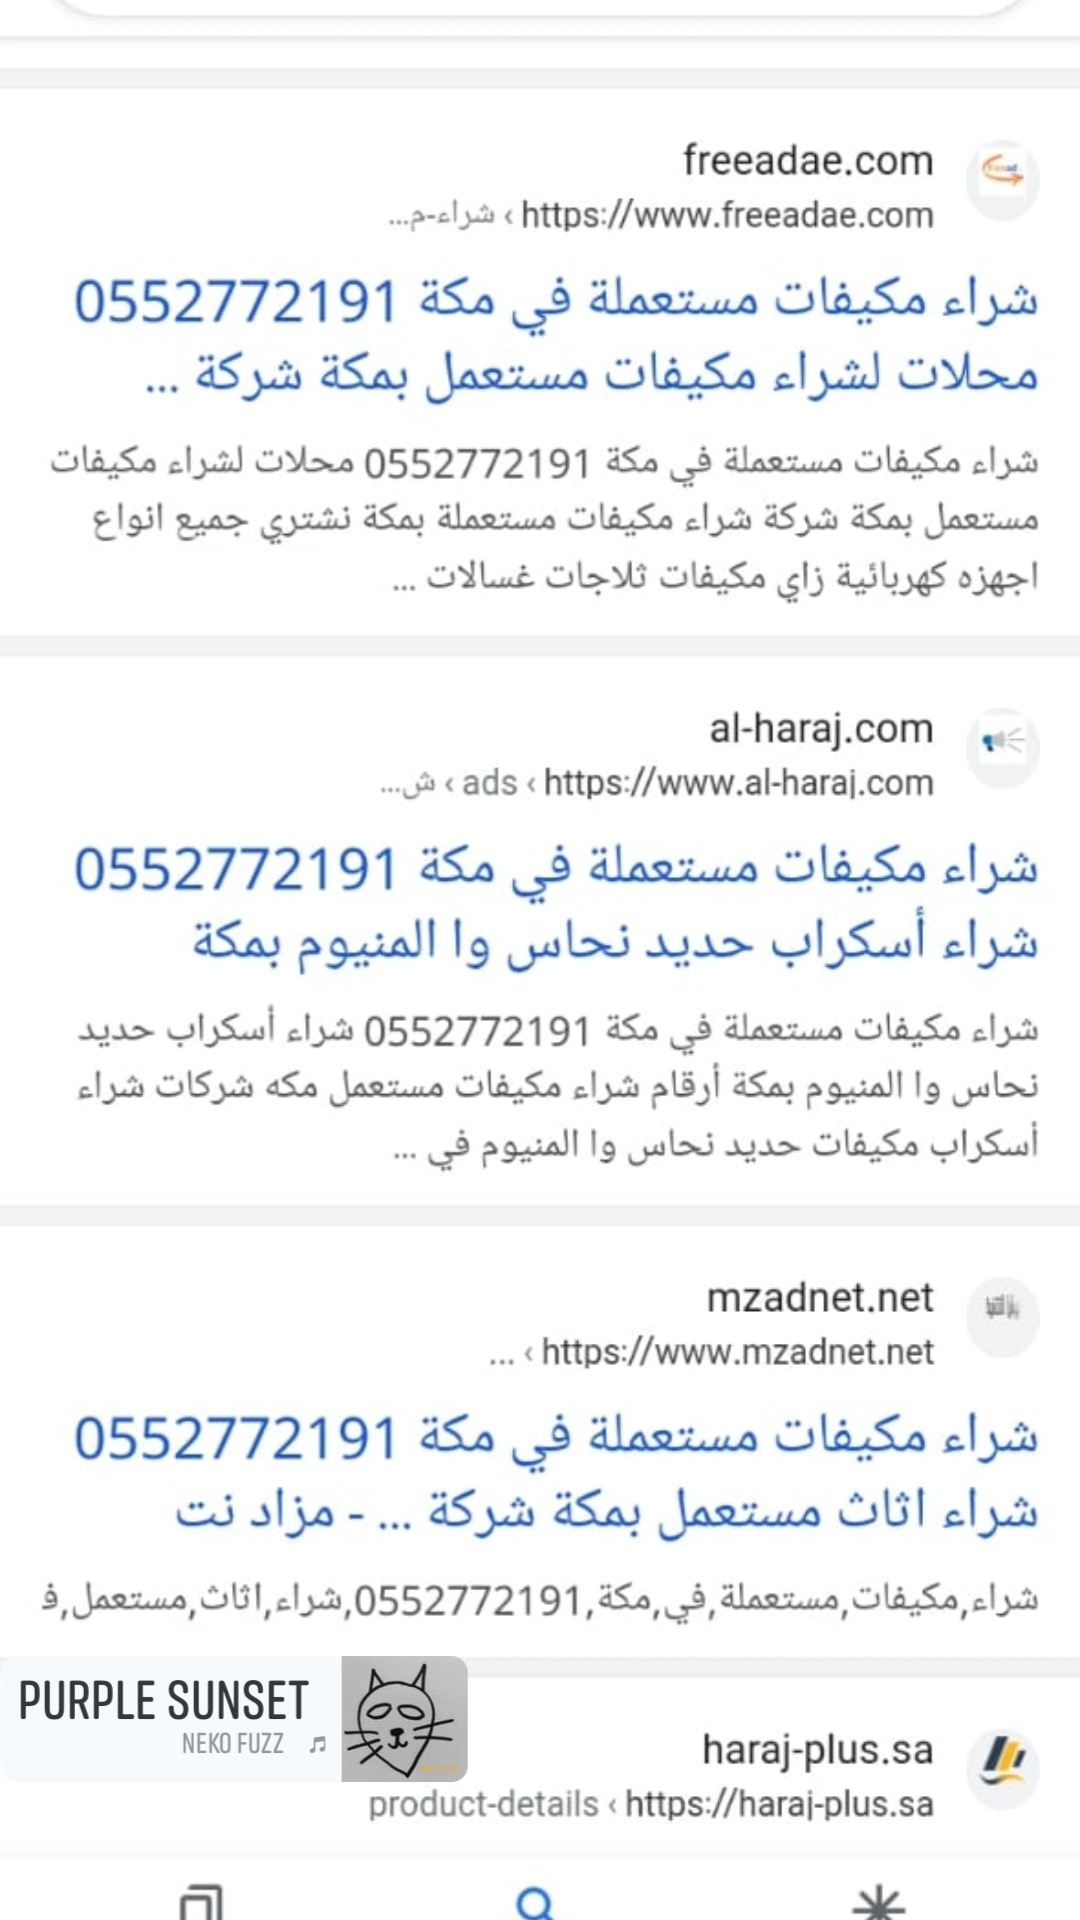 شراء اثاث مستعمل في مكة 0552772191 شراء مكيفات مستعملة في مكة محلات شراء مكيفات مستعمله بمكة 